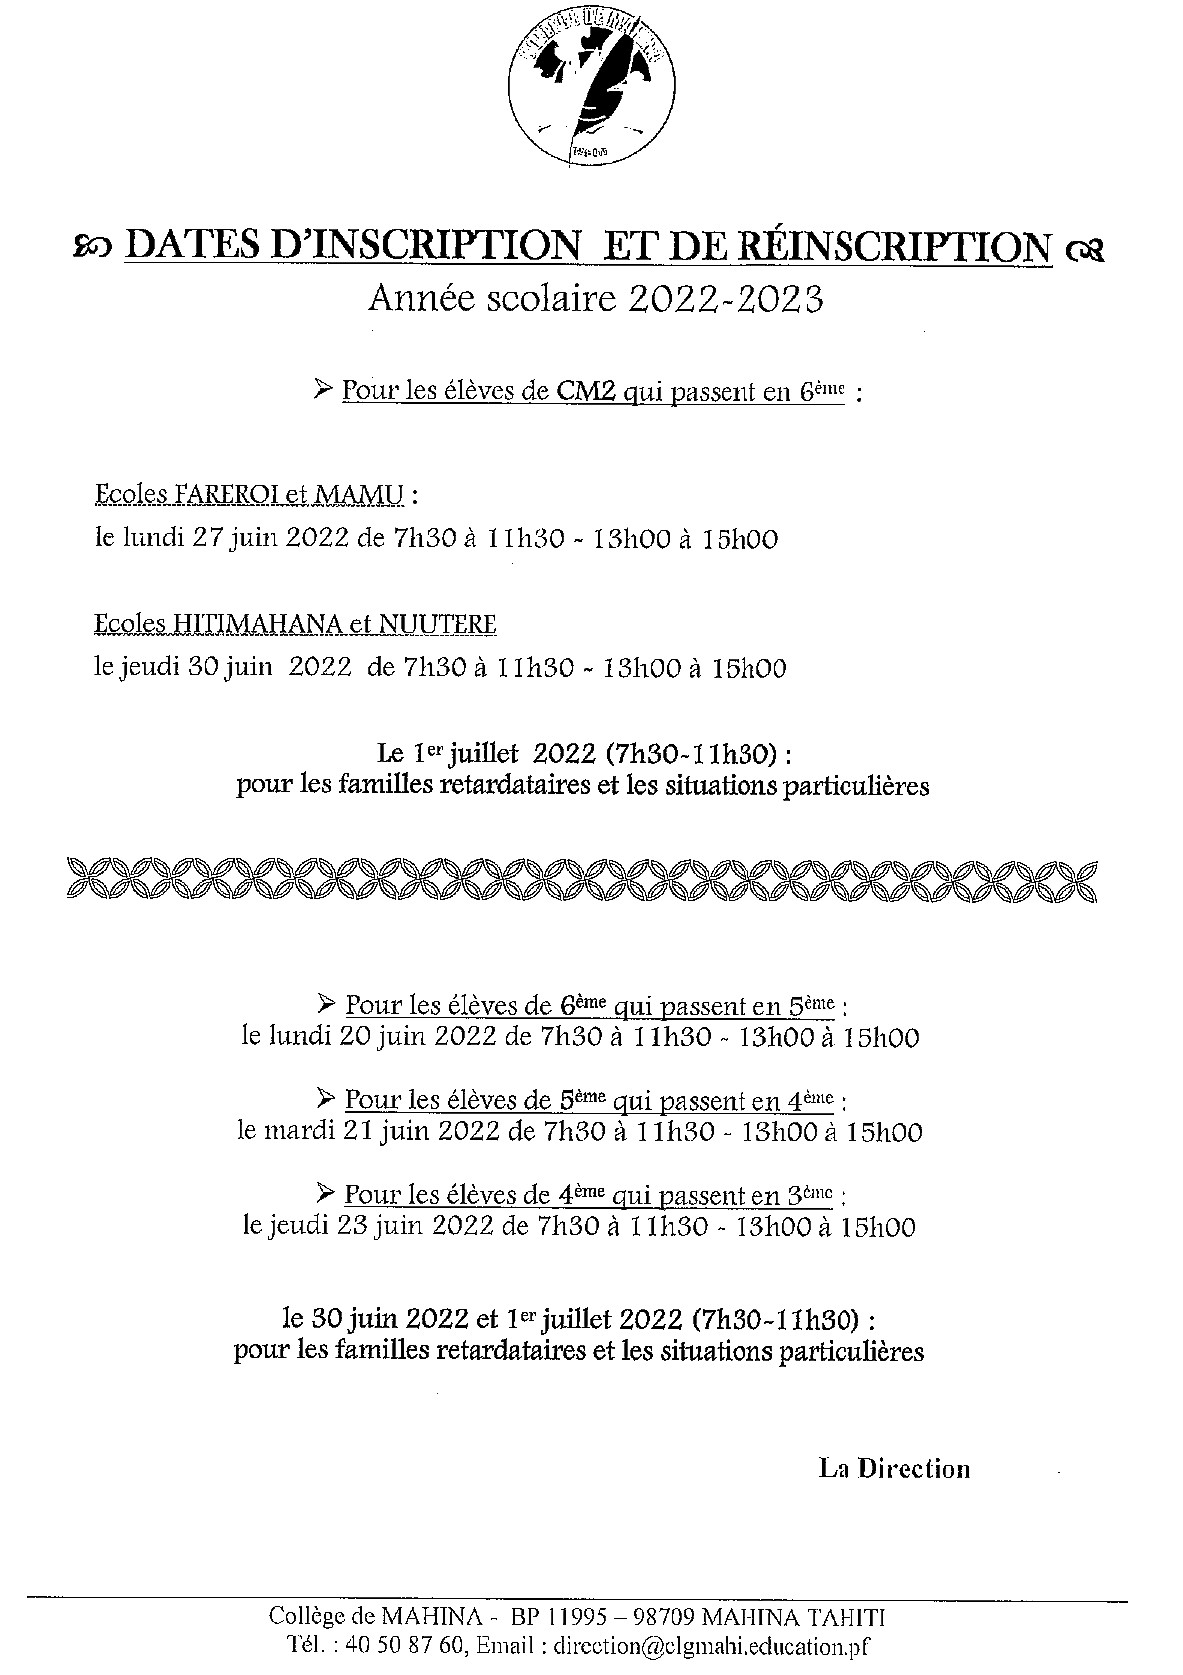 Dates d’inscription ou de réinscription 2022-2023